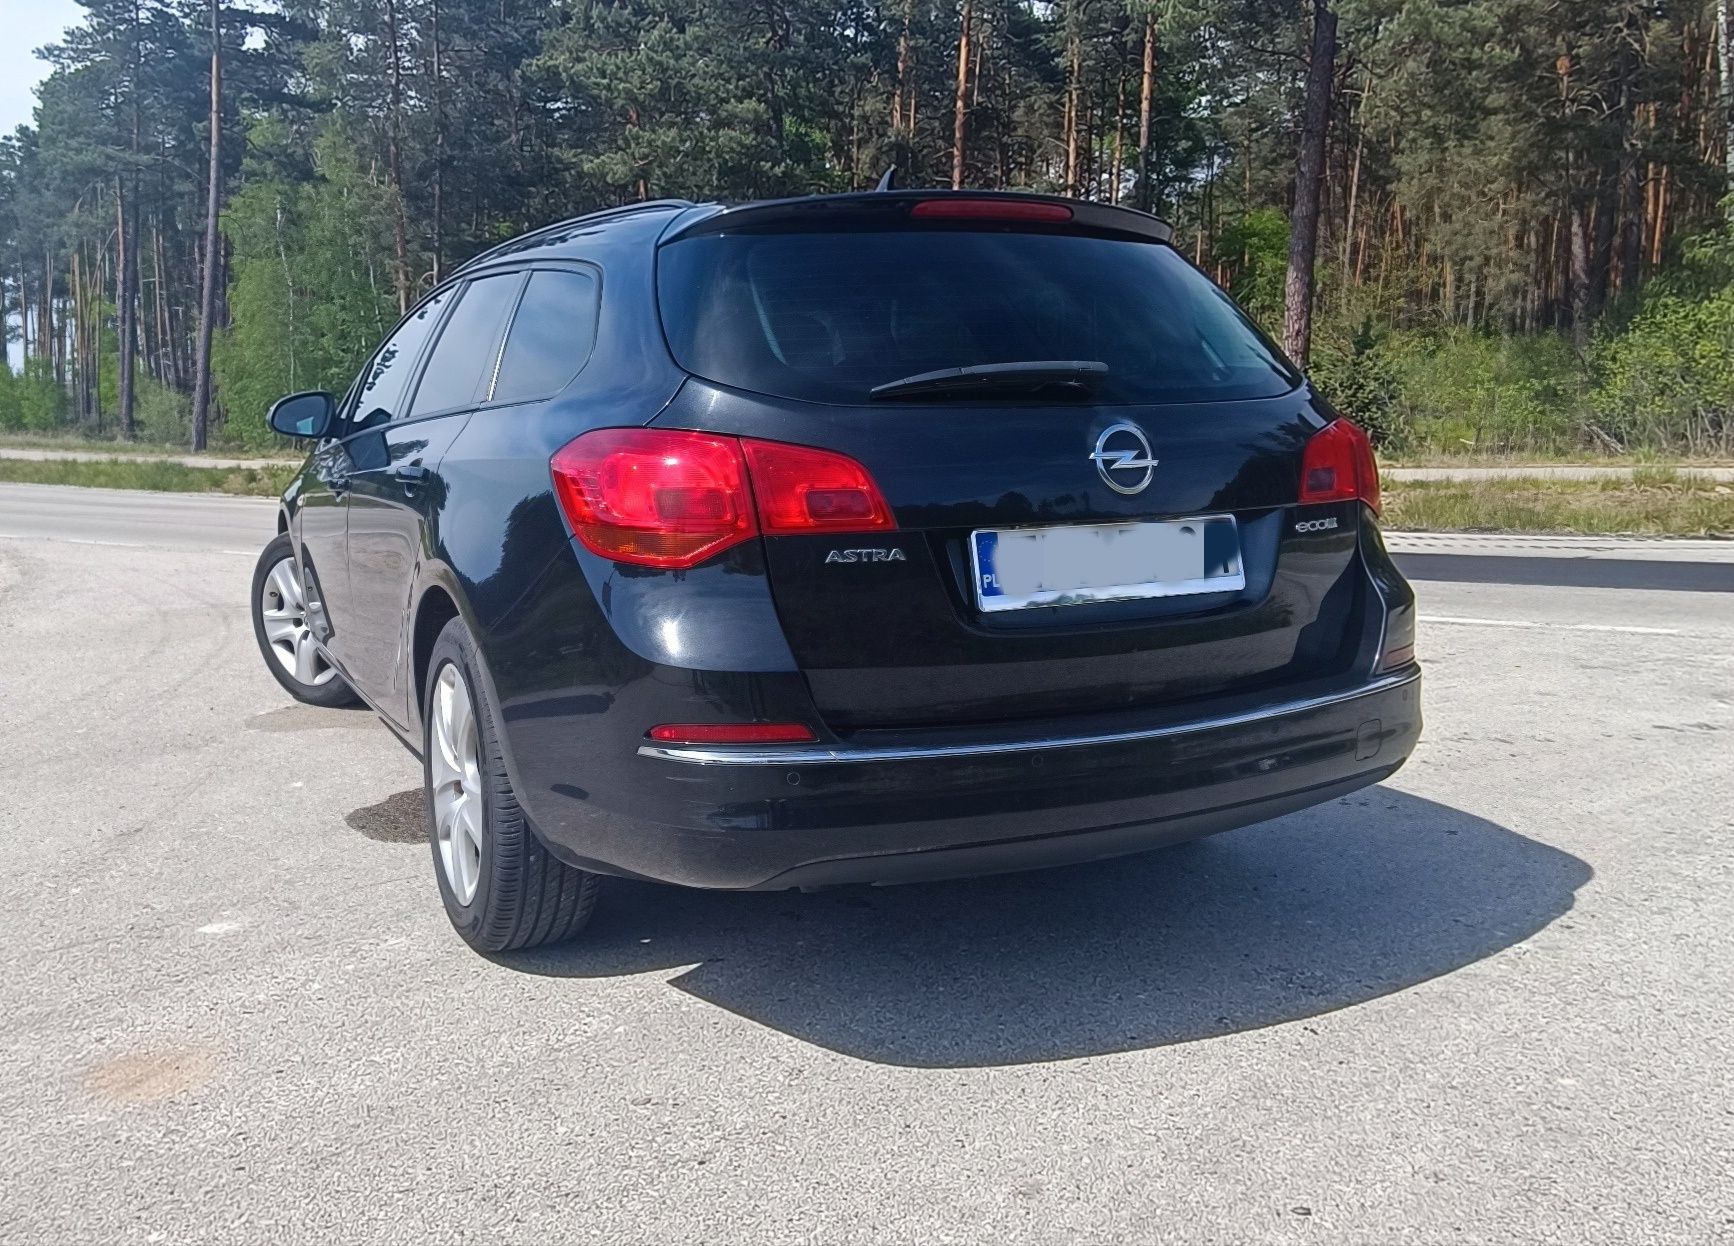 Opel Astra J 1.6 CDTI 136 km